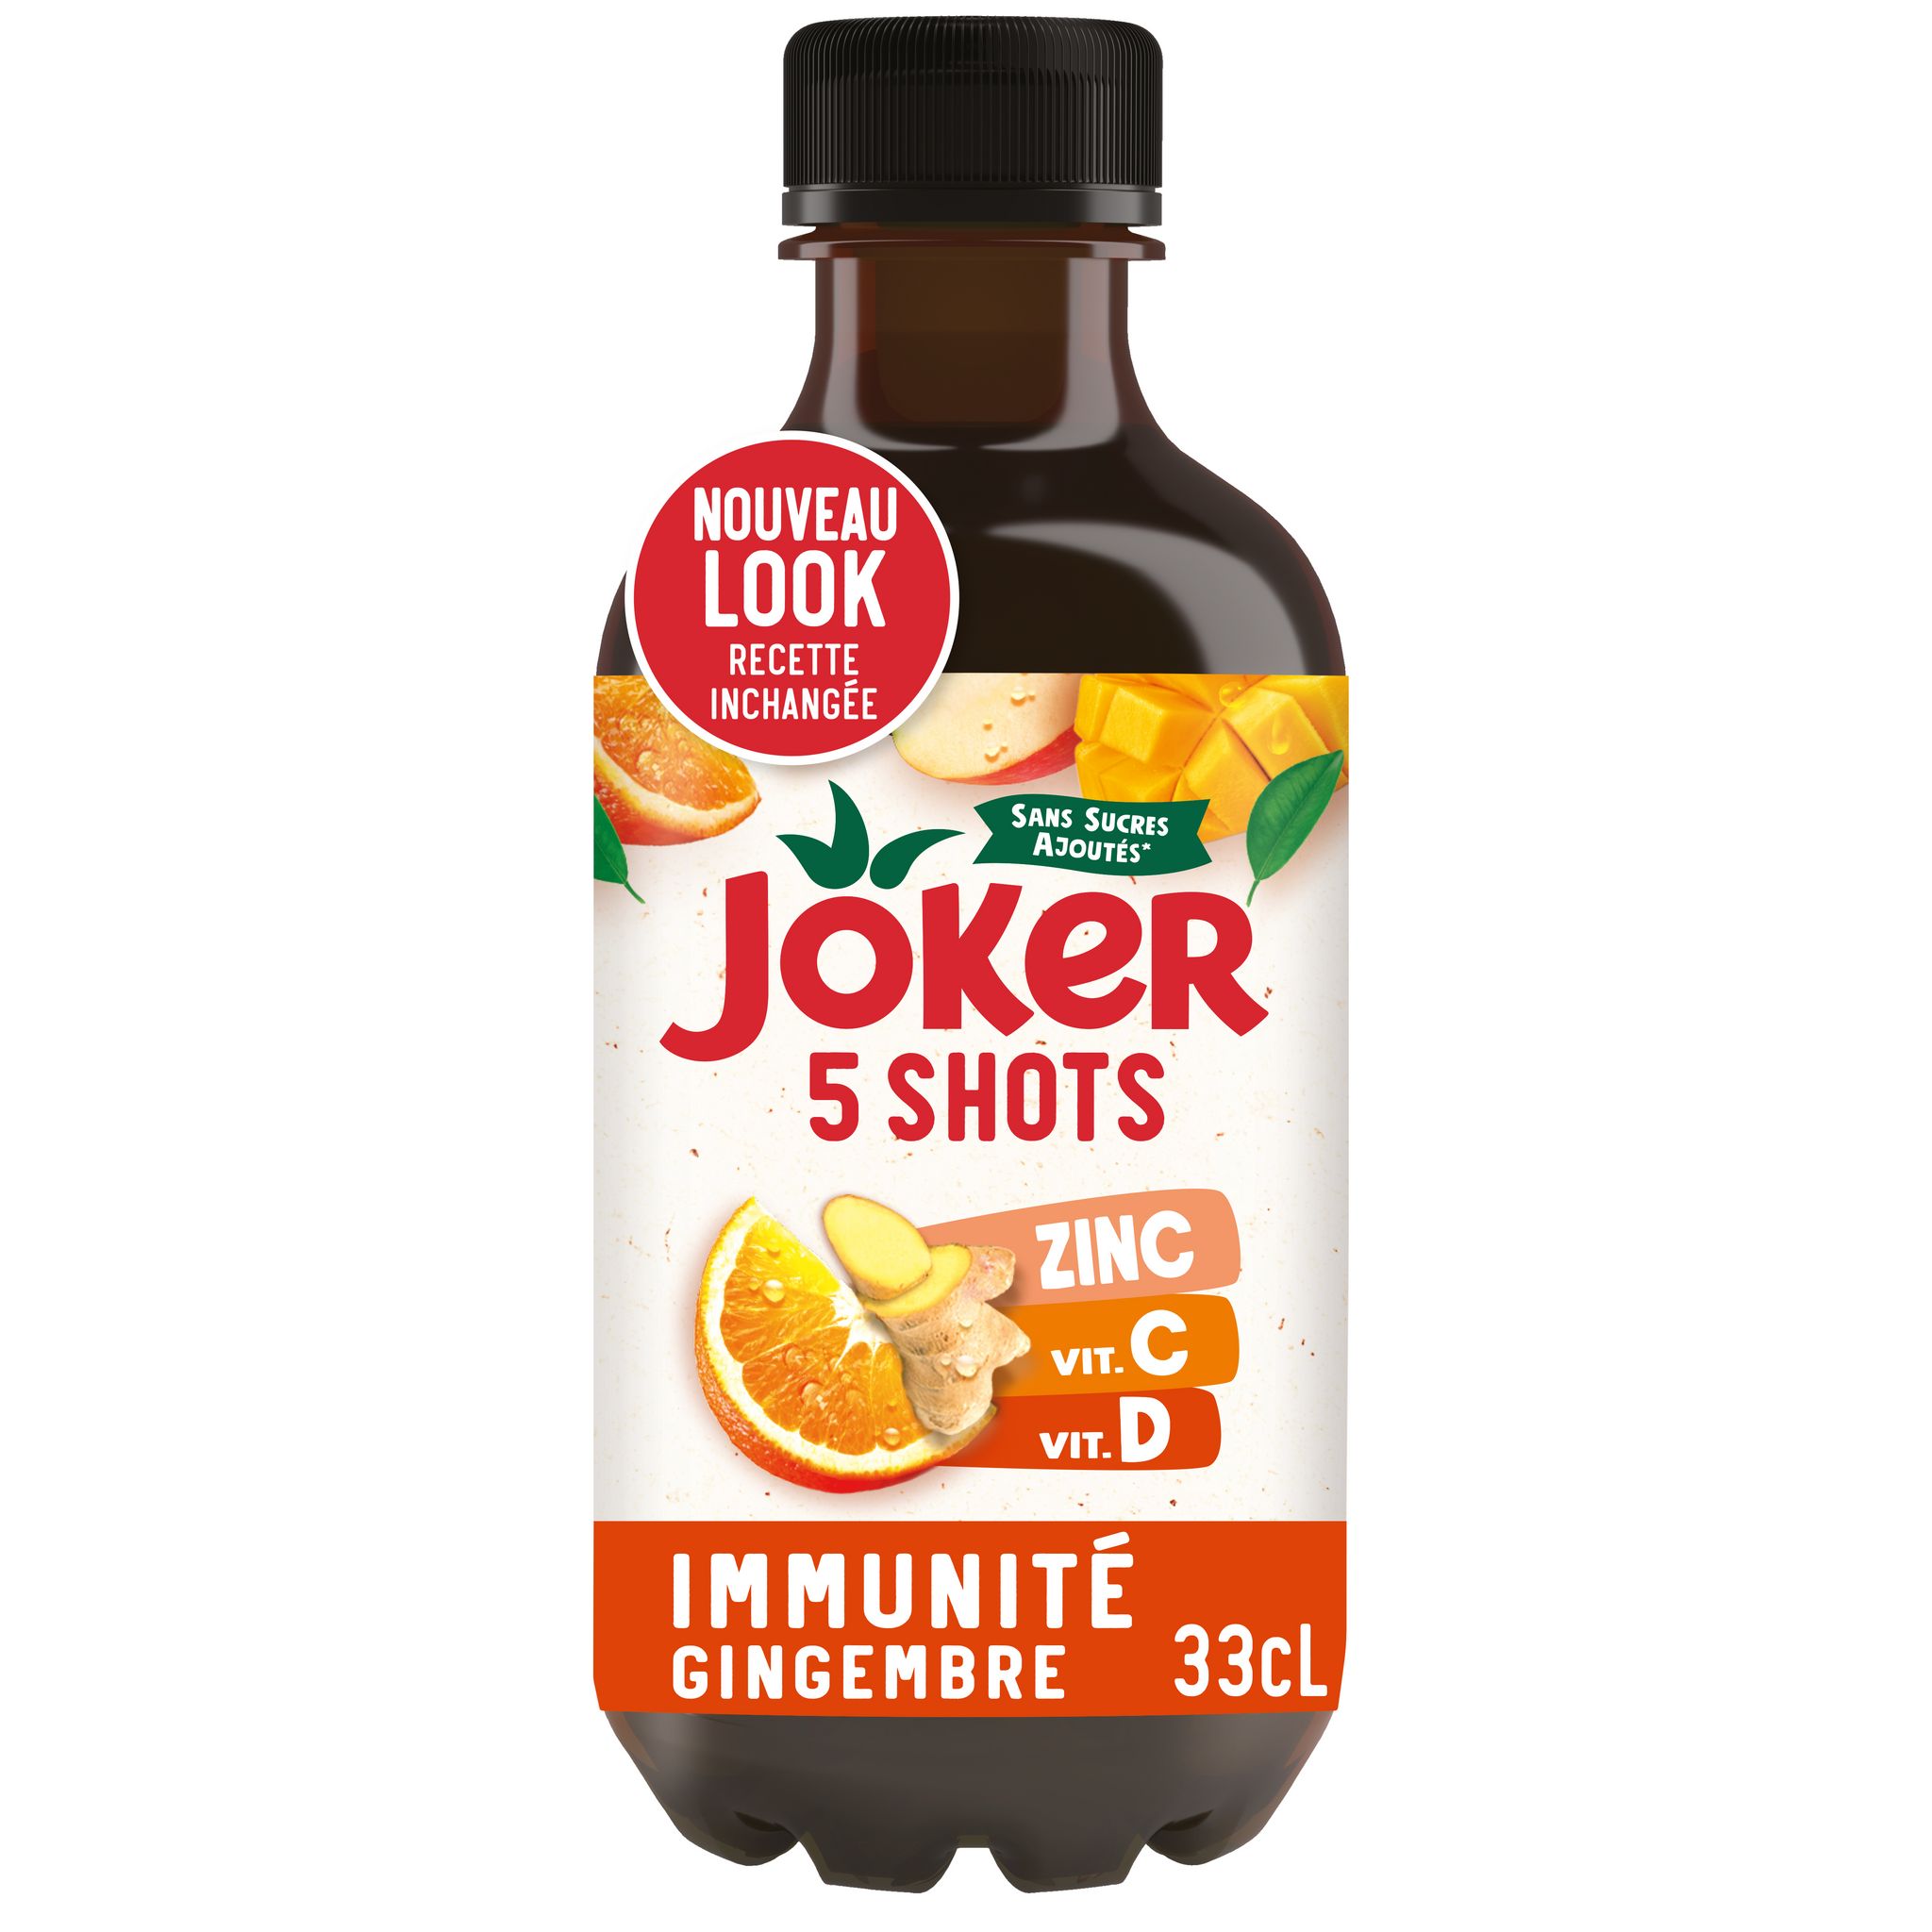 JOKER Shots immunité gingembre 33cl pas cher 